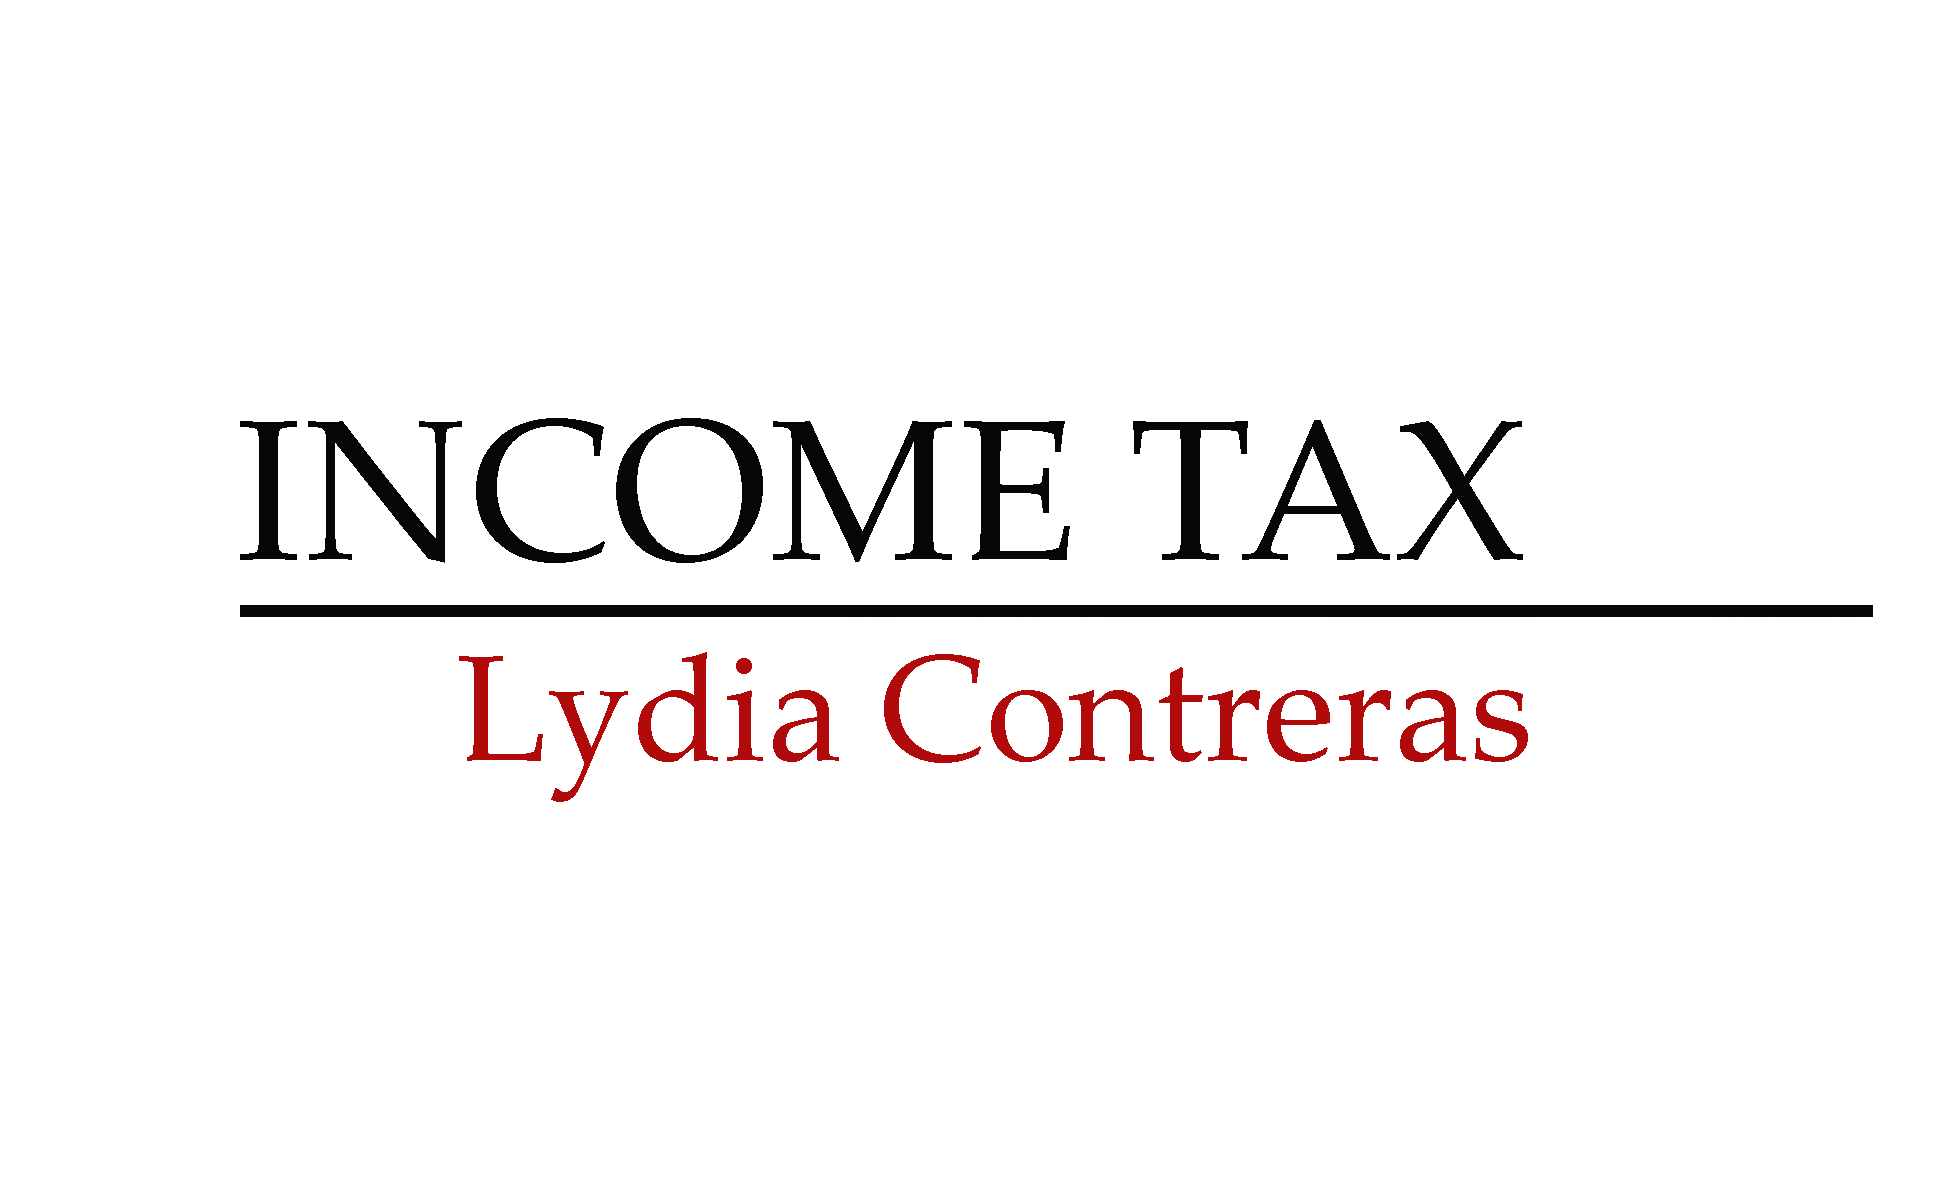 Lydia Contreras Income Tax